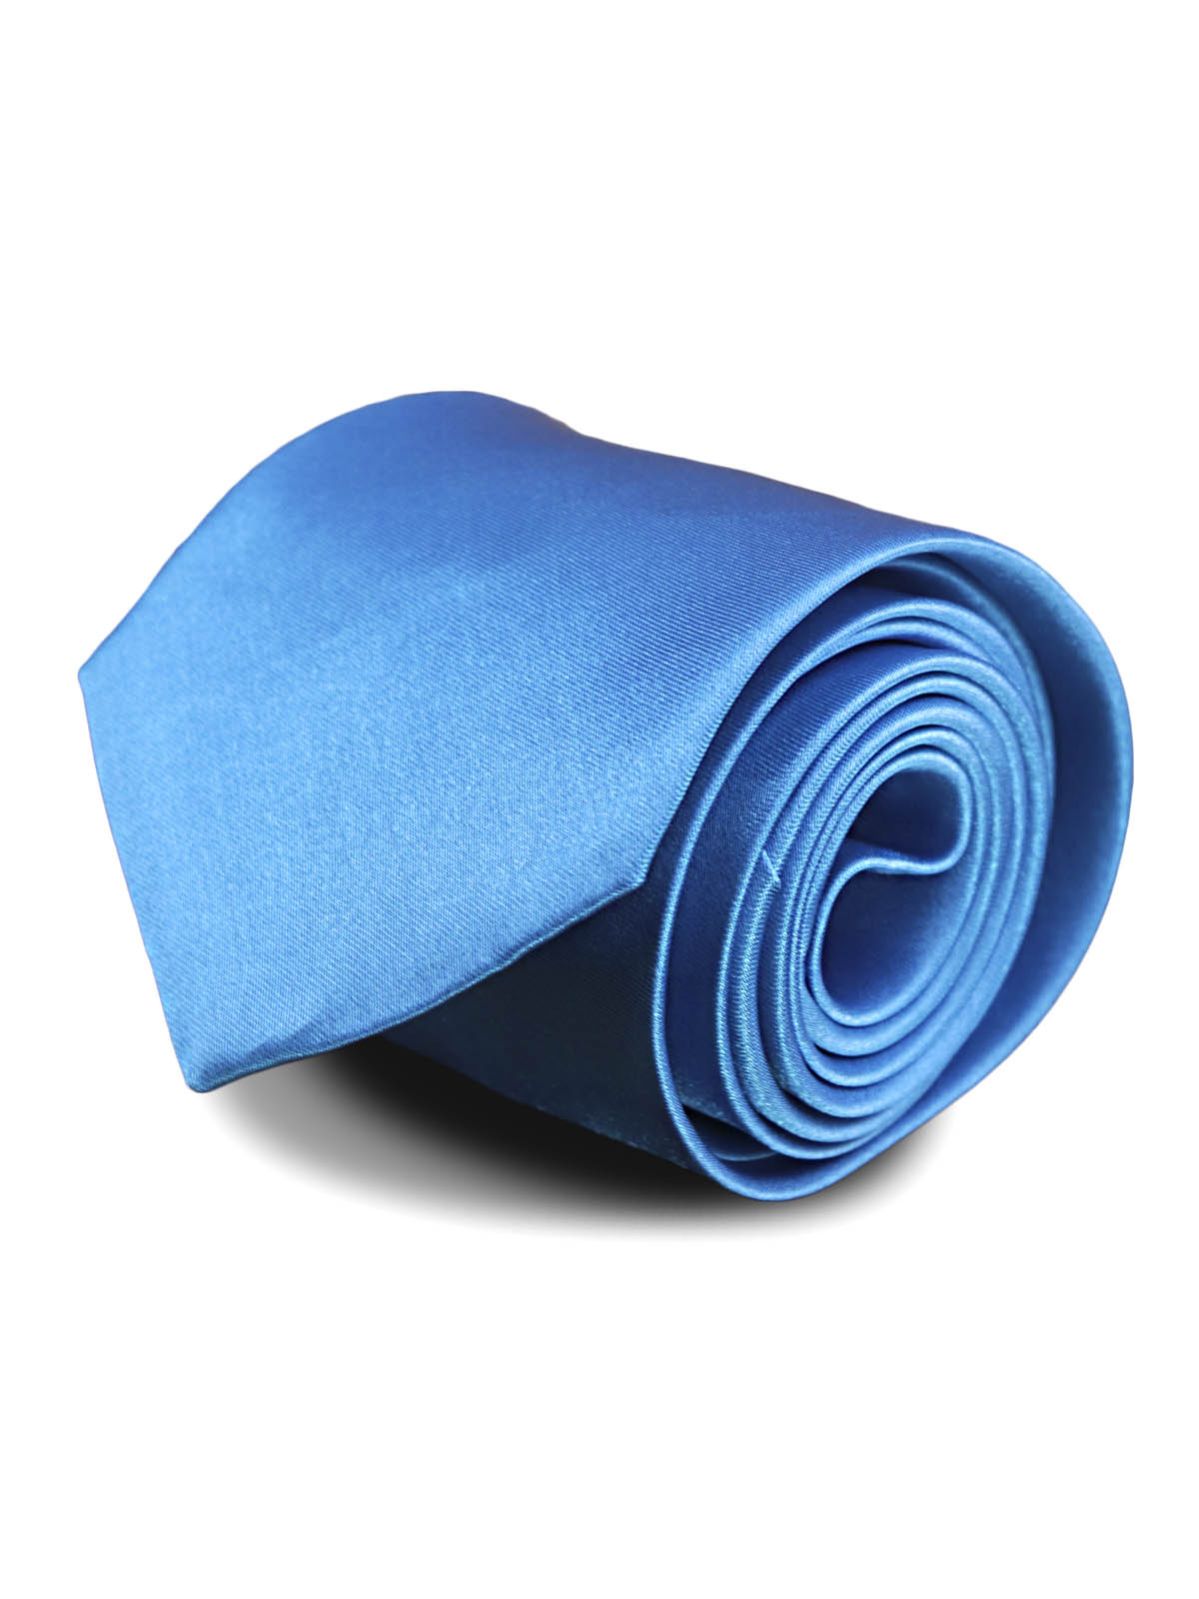 Галстук атласный широкий ярко-голубой описание: Фасон - Широкий галстук, Материал - Полиэстер, Цвет - Ярко-голубой, Размер - Ширина: 8 см, Длина: 150 см, Страна производства - Турция.